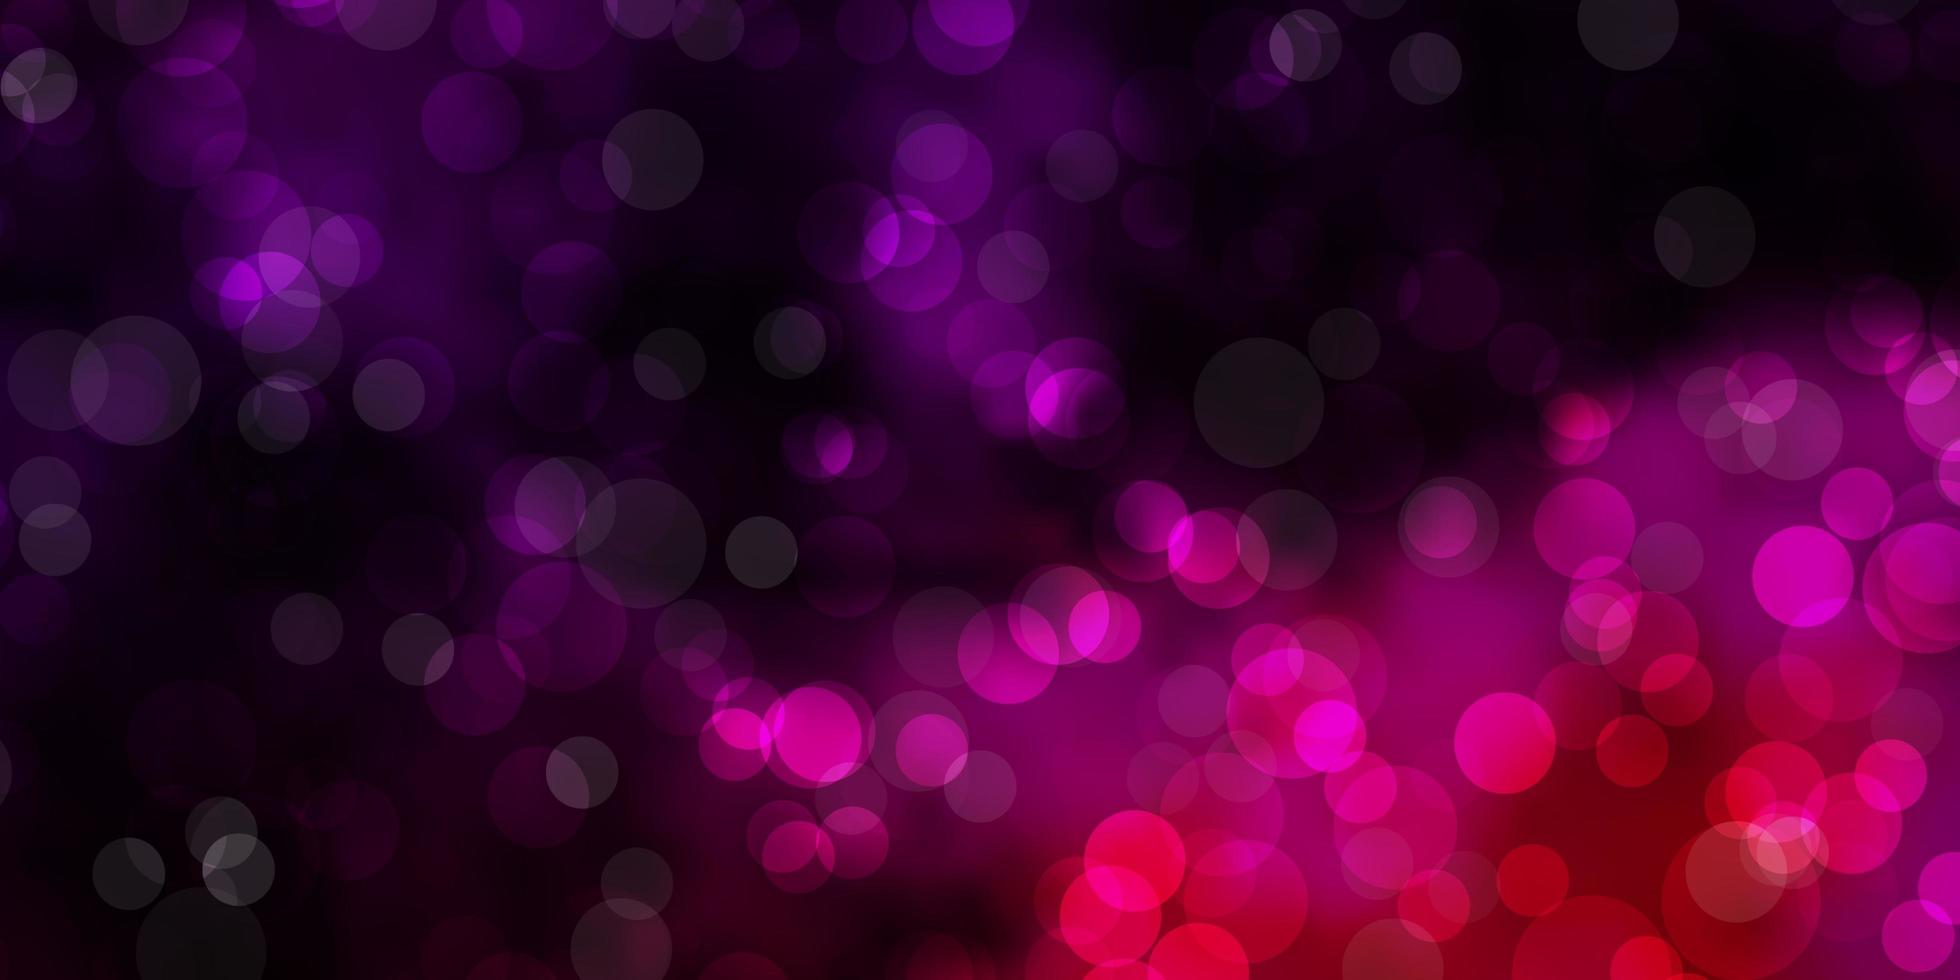 Khám phá hình nền họa tiết màu tím hồng đậm đầy cá tính. Những đường nét tinh tế và phối màu ấn tượng sẽ làm cho màn hình của bạn trở nên độc đáo và nổi bật. Click ngay để thưởng thức hình ảnh tuyệt đẹp này.